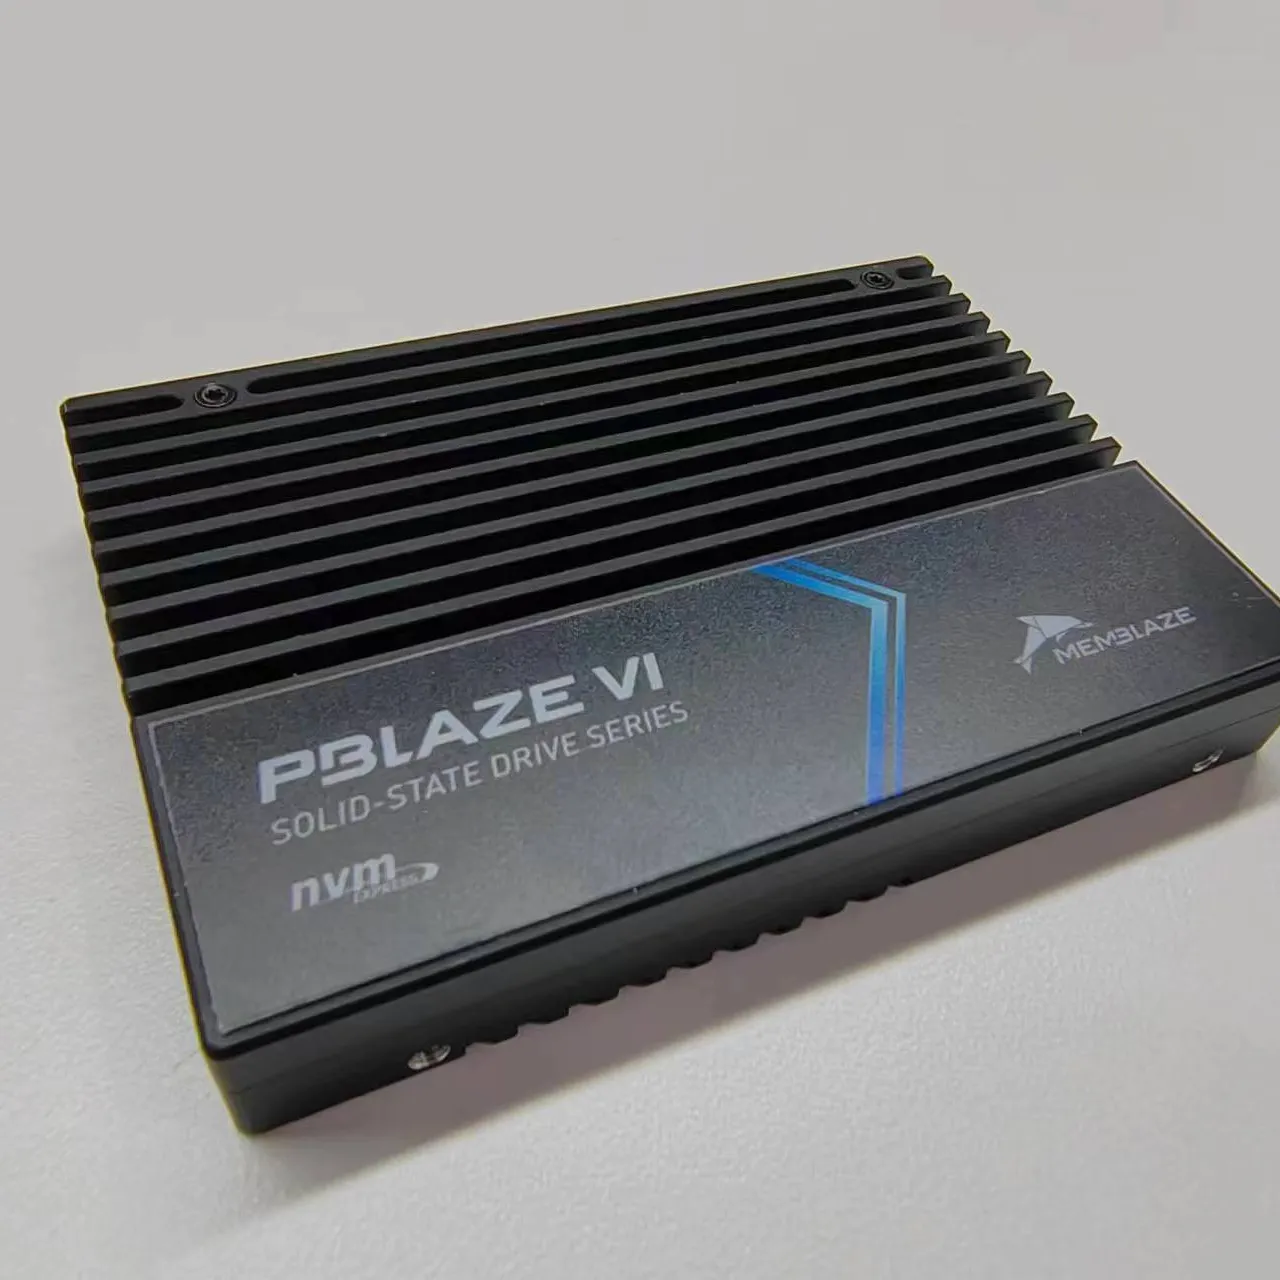 PBlaze6 6530 SSD haute performance à faible puissance U.2 1.92T 3.84T 7.68T 2T 4T 8T NVMe PCIe 4.0 SSD